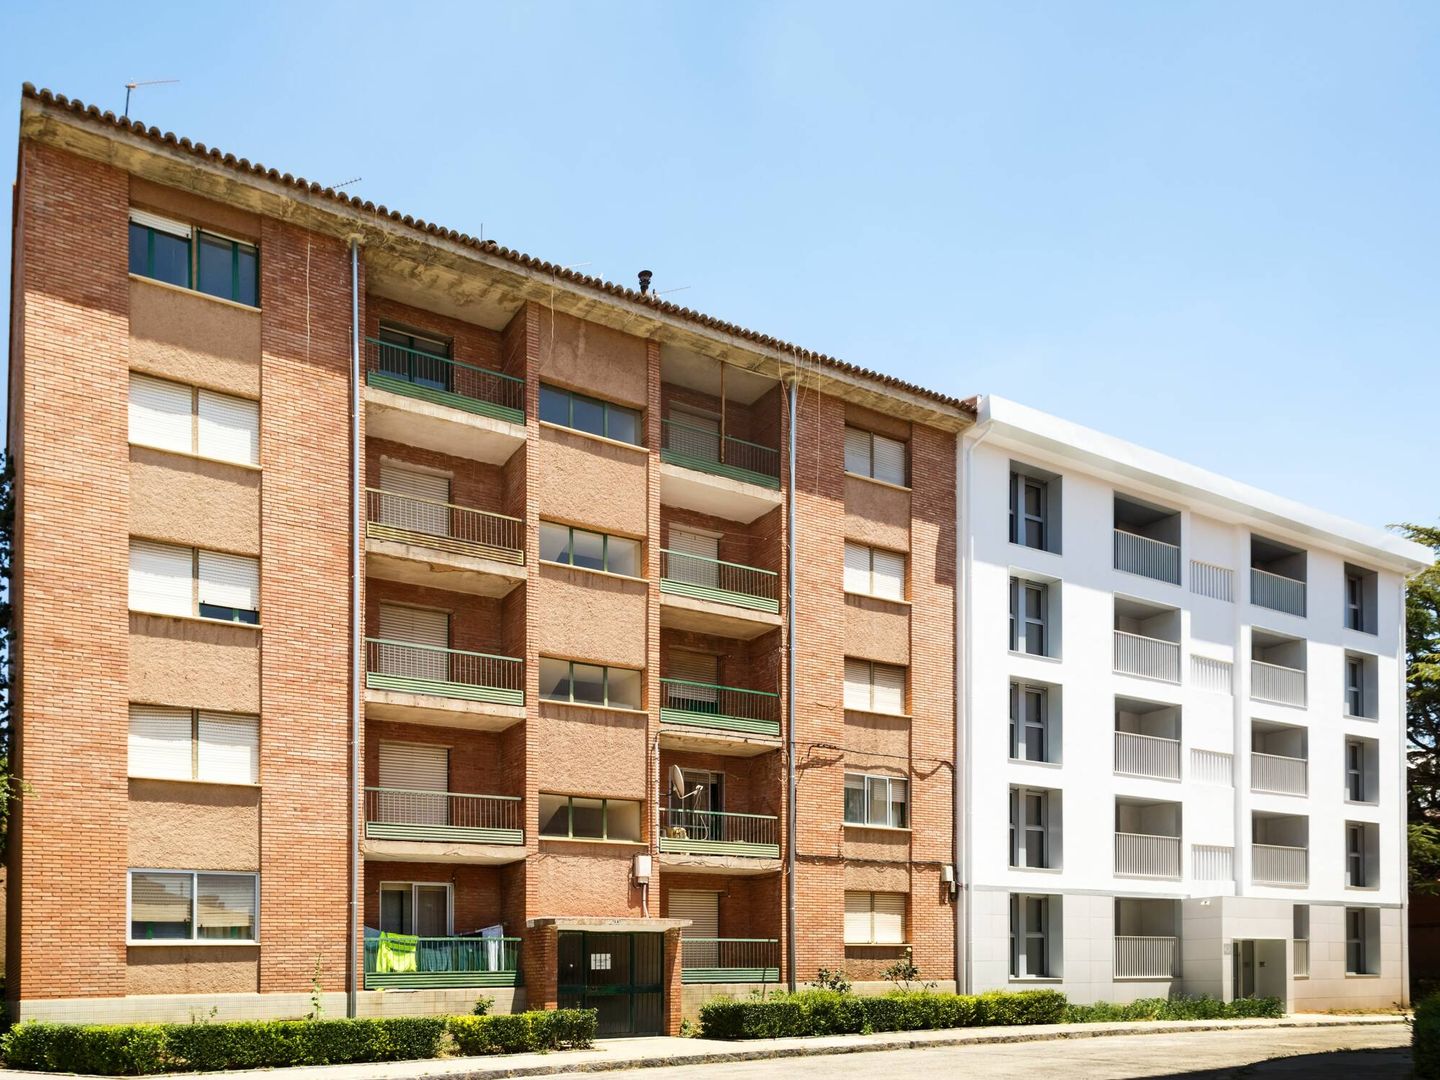 Fachada de la rehabilitación de una vivienda bajo estándar Passivhaus en Alcañiz (Teruel).